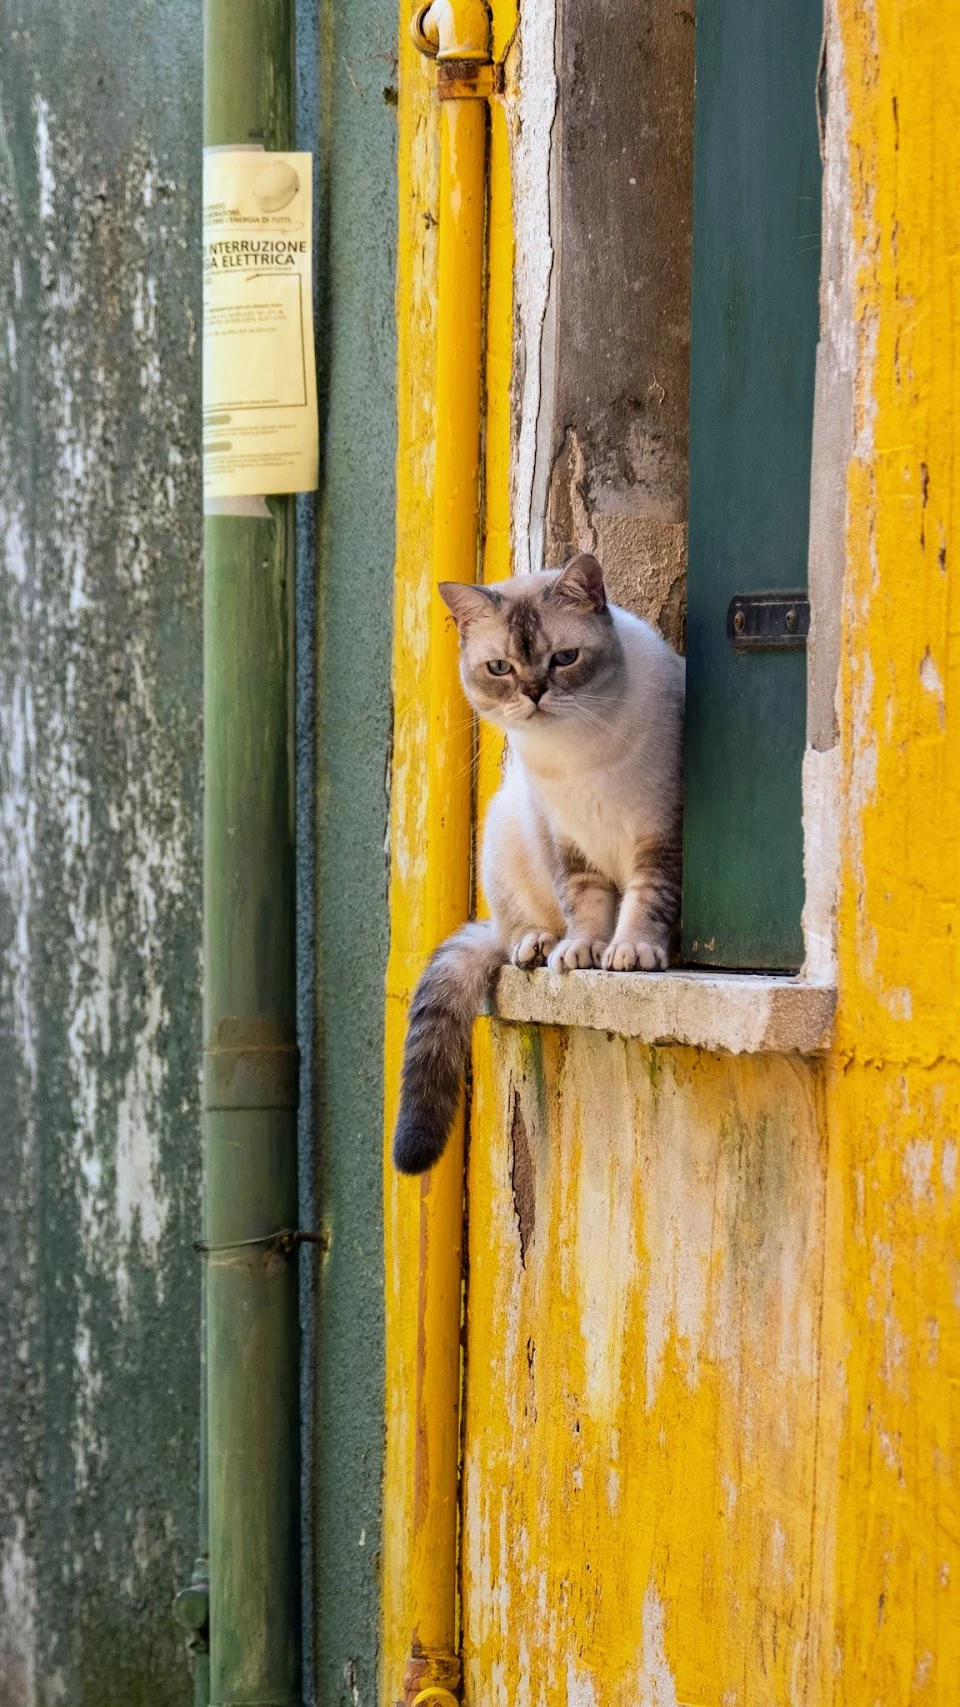 Suspicious cat in Burano, Italy